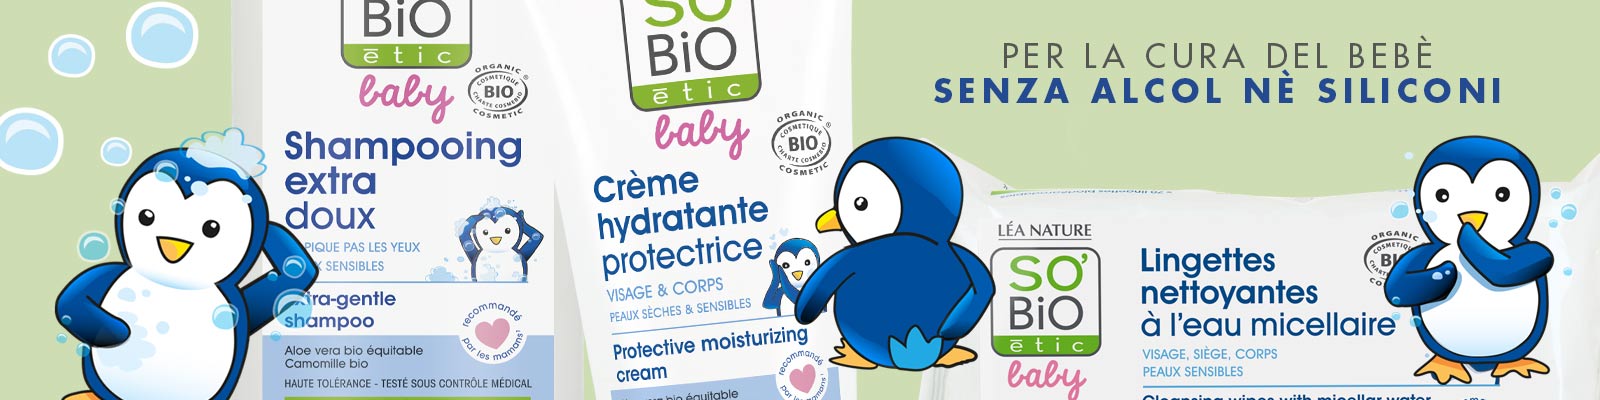 Linea Baby - So'Bio étic - Cosmetici biologici utilizzabili fin dalla nascita (da neonati e bambini)